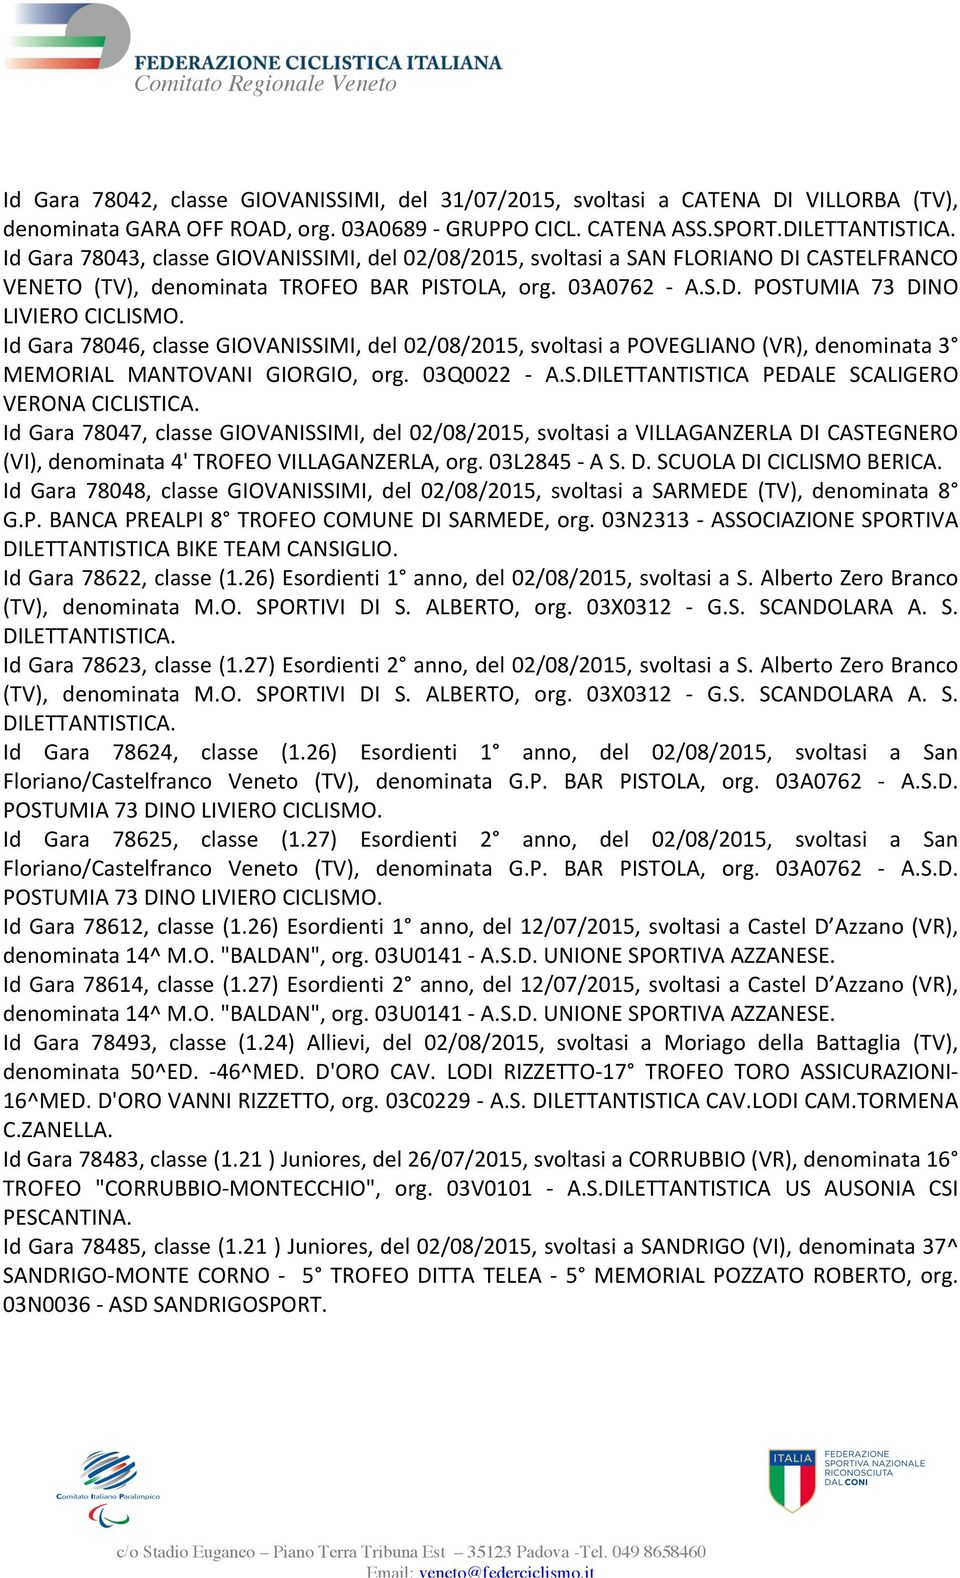 Id Gara 78046, classe GIOVANISSIMI, del 02/08/2015, svoltasi a POVEGLIANO (VR), denominata 3 MEMORIAL MANTOVANI GIORGIO, org. 03Q0022 - A.S.DILETTANTISTICA PEDALE SCALIGERO VERONA CICLISTICA.